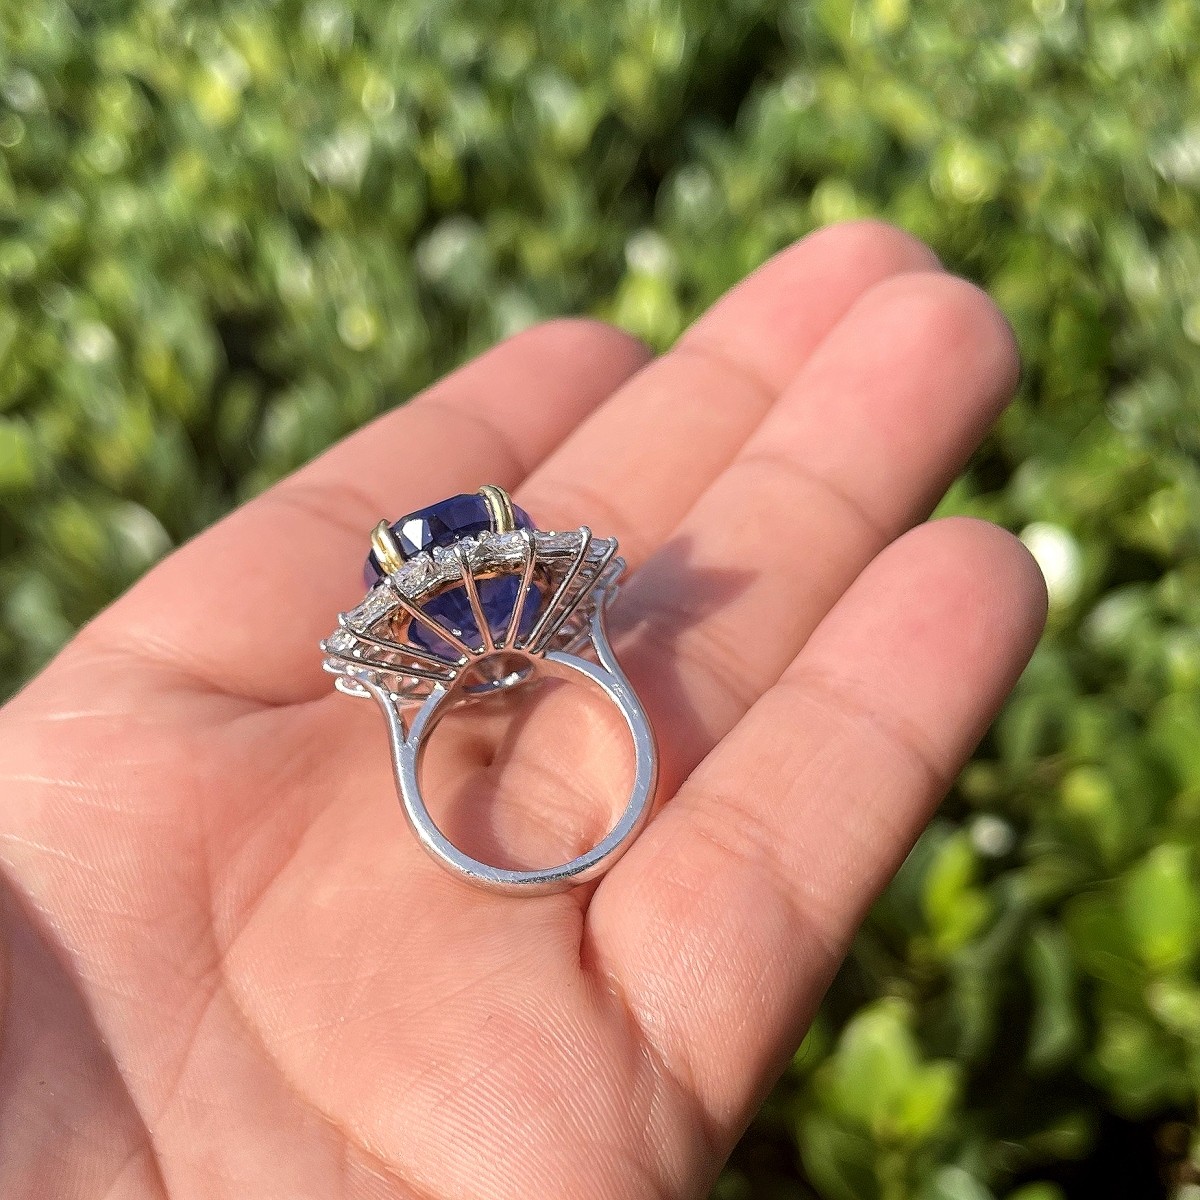 GIA / AGL 33.64 Ceylon Sapphire Ring